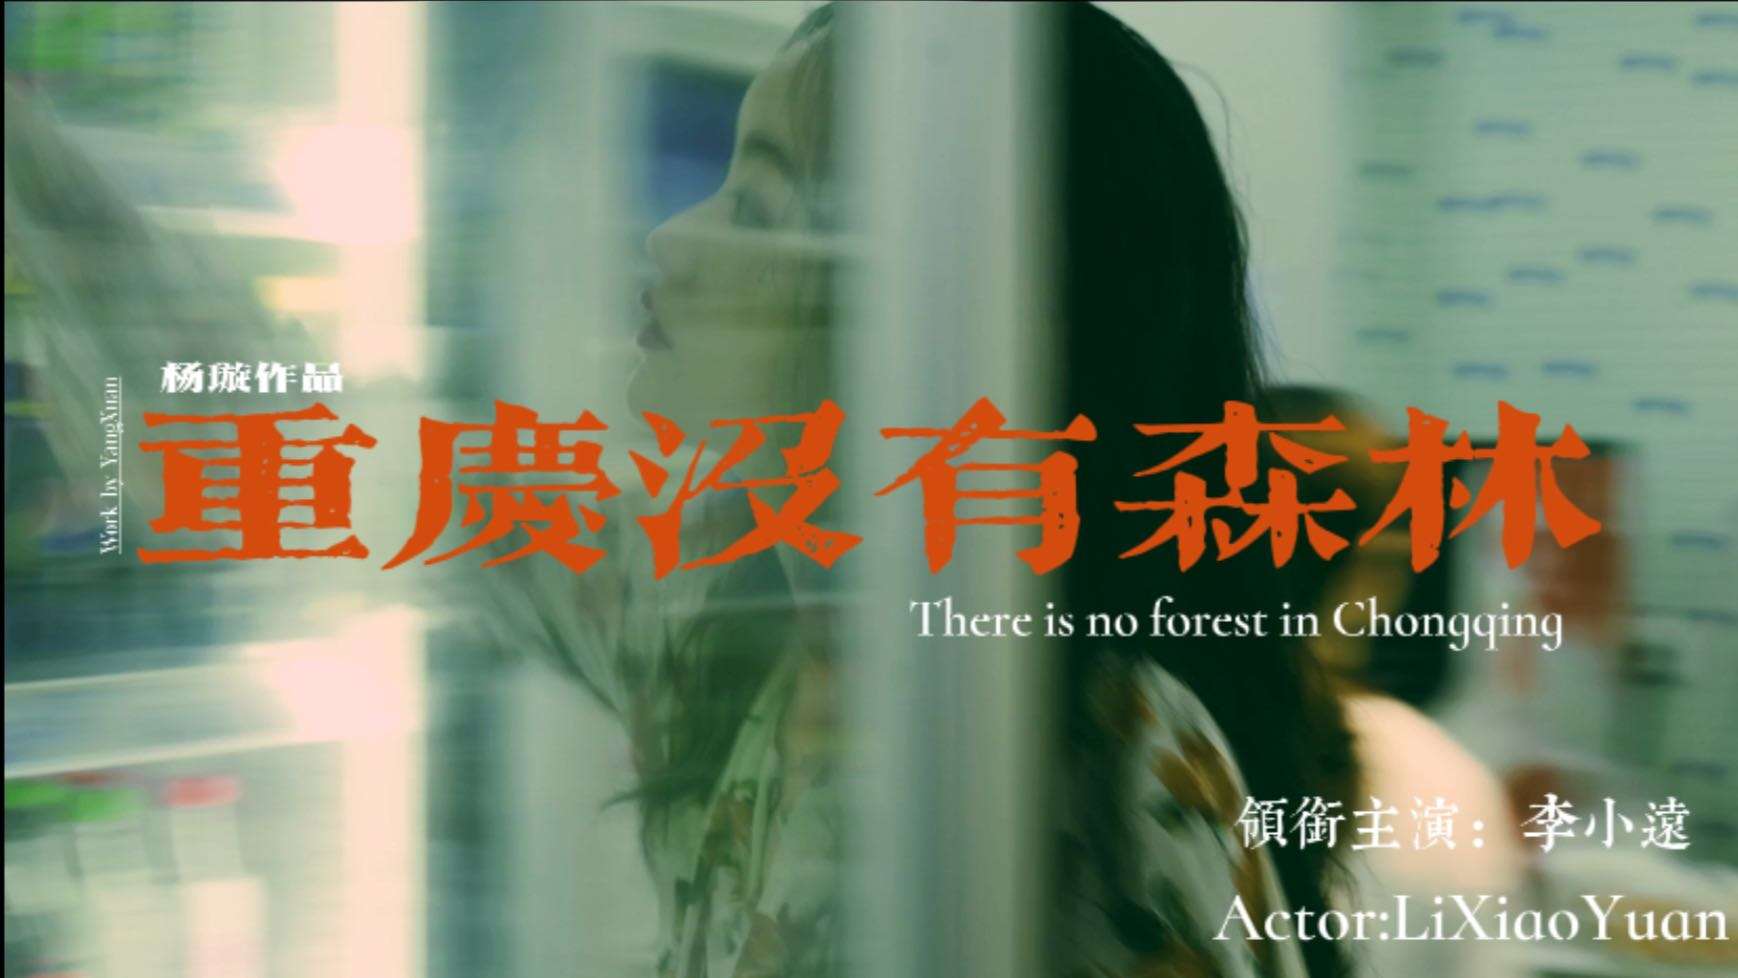 《重庆没有森林》 | 仿王家卫风格情绪短片